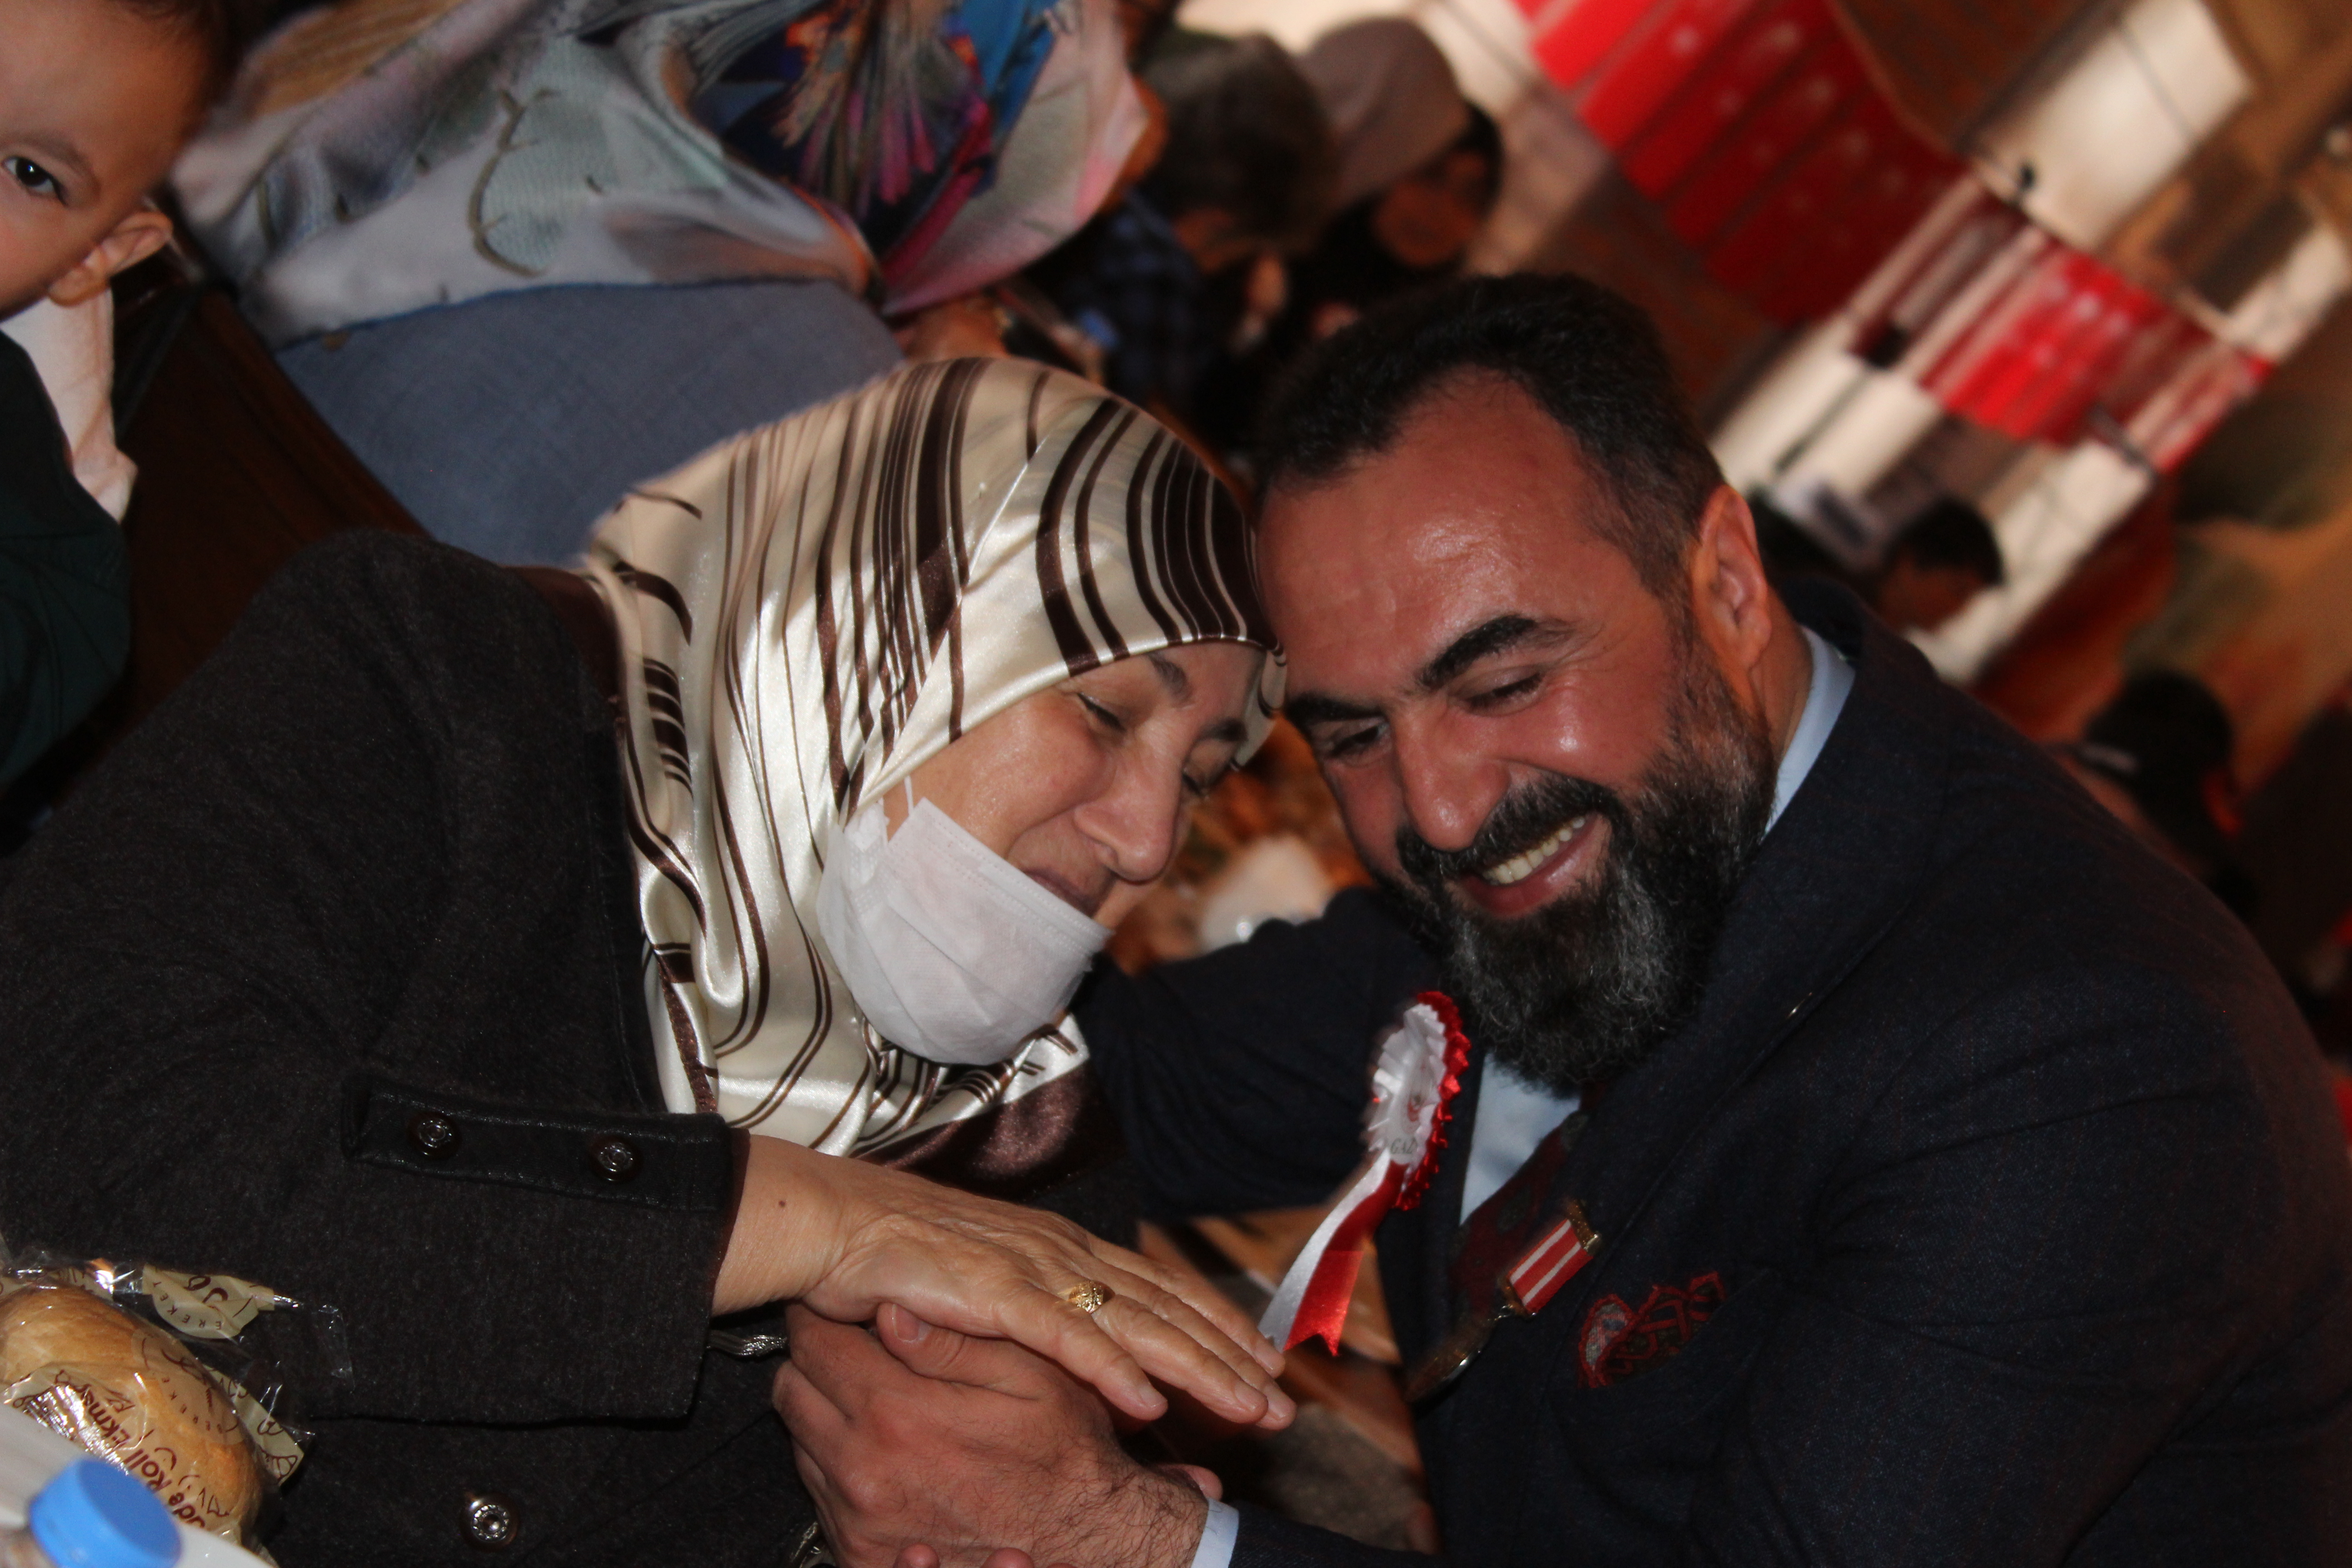 Türkiye Gaziler Ve Şehit Aileleri Vakfı Olarak Şehit Annelerimizin Anneler Gününü Kutladık.Programımıza katılan Ak Parti Ankara Milletvekili Adayı Osman GÖKÇEK ve Altındağ Belediye Başkanı  Asım Balcı'ya Teşekkür ederiz.  